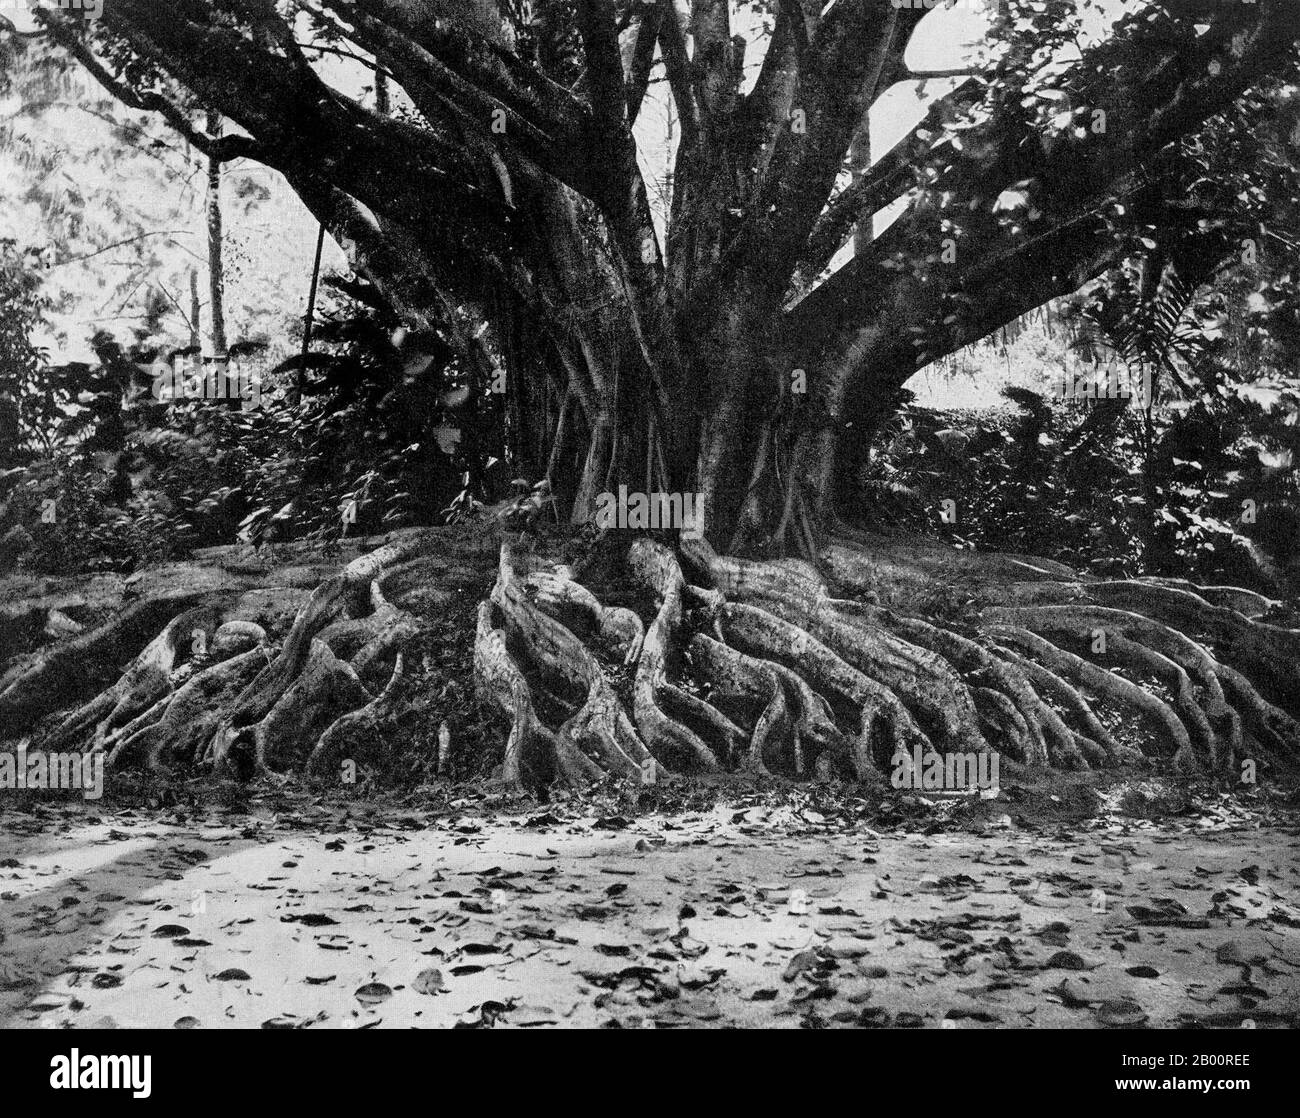 Sri Lanka: Un albero di Ficus Elastica a Peradeniya, Highlands centrali. Fotografia di Ernst Haeckel (1834-1919), inizio 20 ° secolo. Ernst Heinrich Philipp August Haeckel (1919 febbraio 1834 – 9 agosto 16), anch'esso scritto da von Haeckel, è stato un eminente biologo, naturalista, filosofo, medico, professore e artista tedesco che scoprì, descrisse e nominò migliaia di nuove specie, mappò un albero genealogico relativo a tutte le forme di vita, E coniò molti termini in biologia, tra cui antropogenia, ecologia, phylum, filogenia, e il regno Protista. Foto Stock